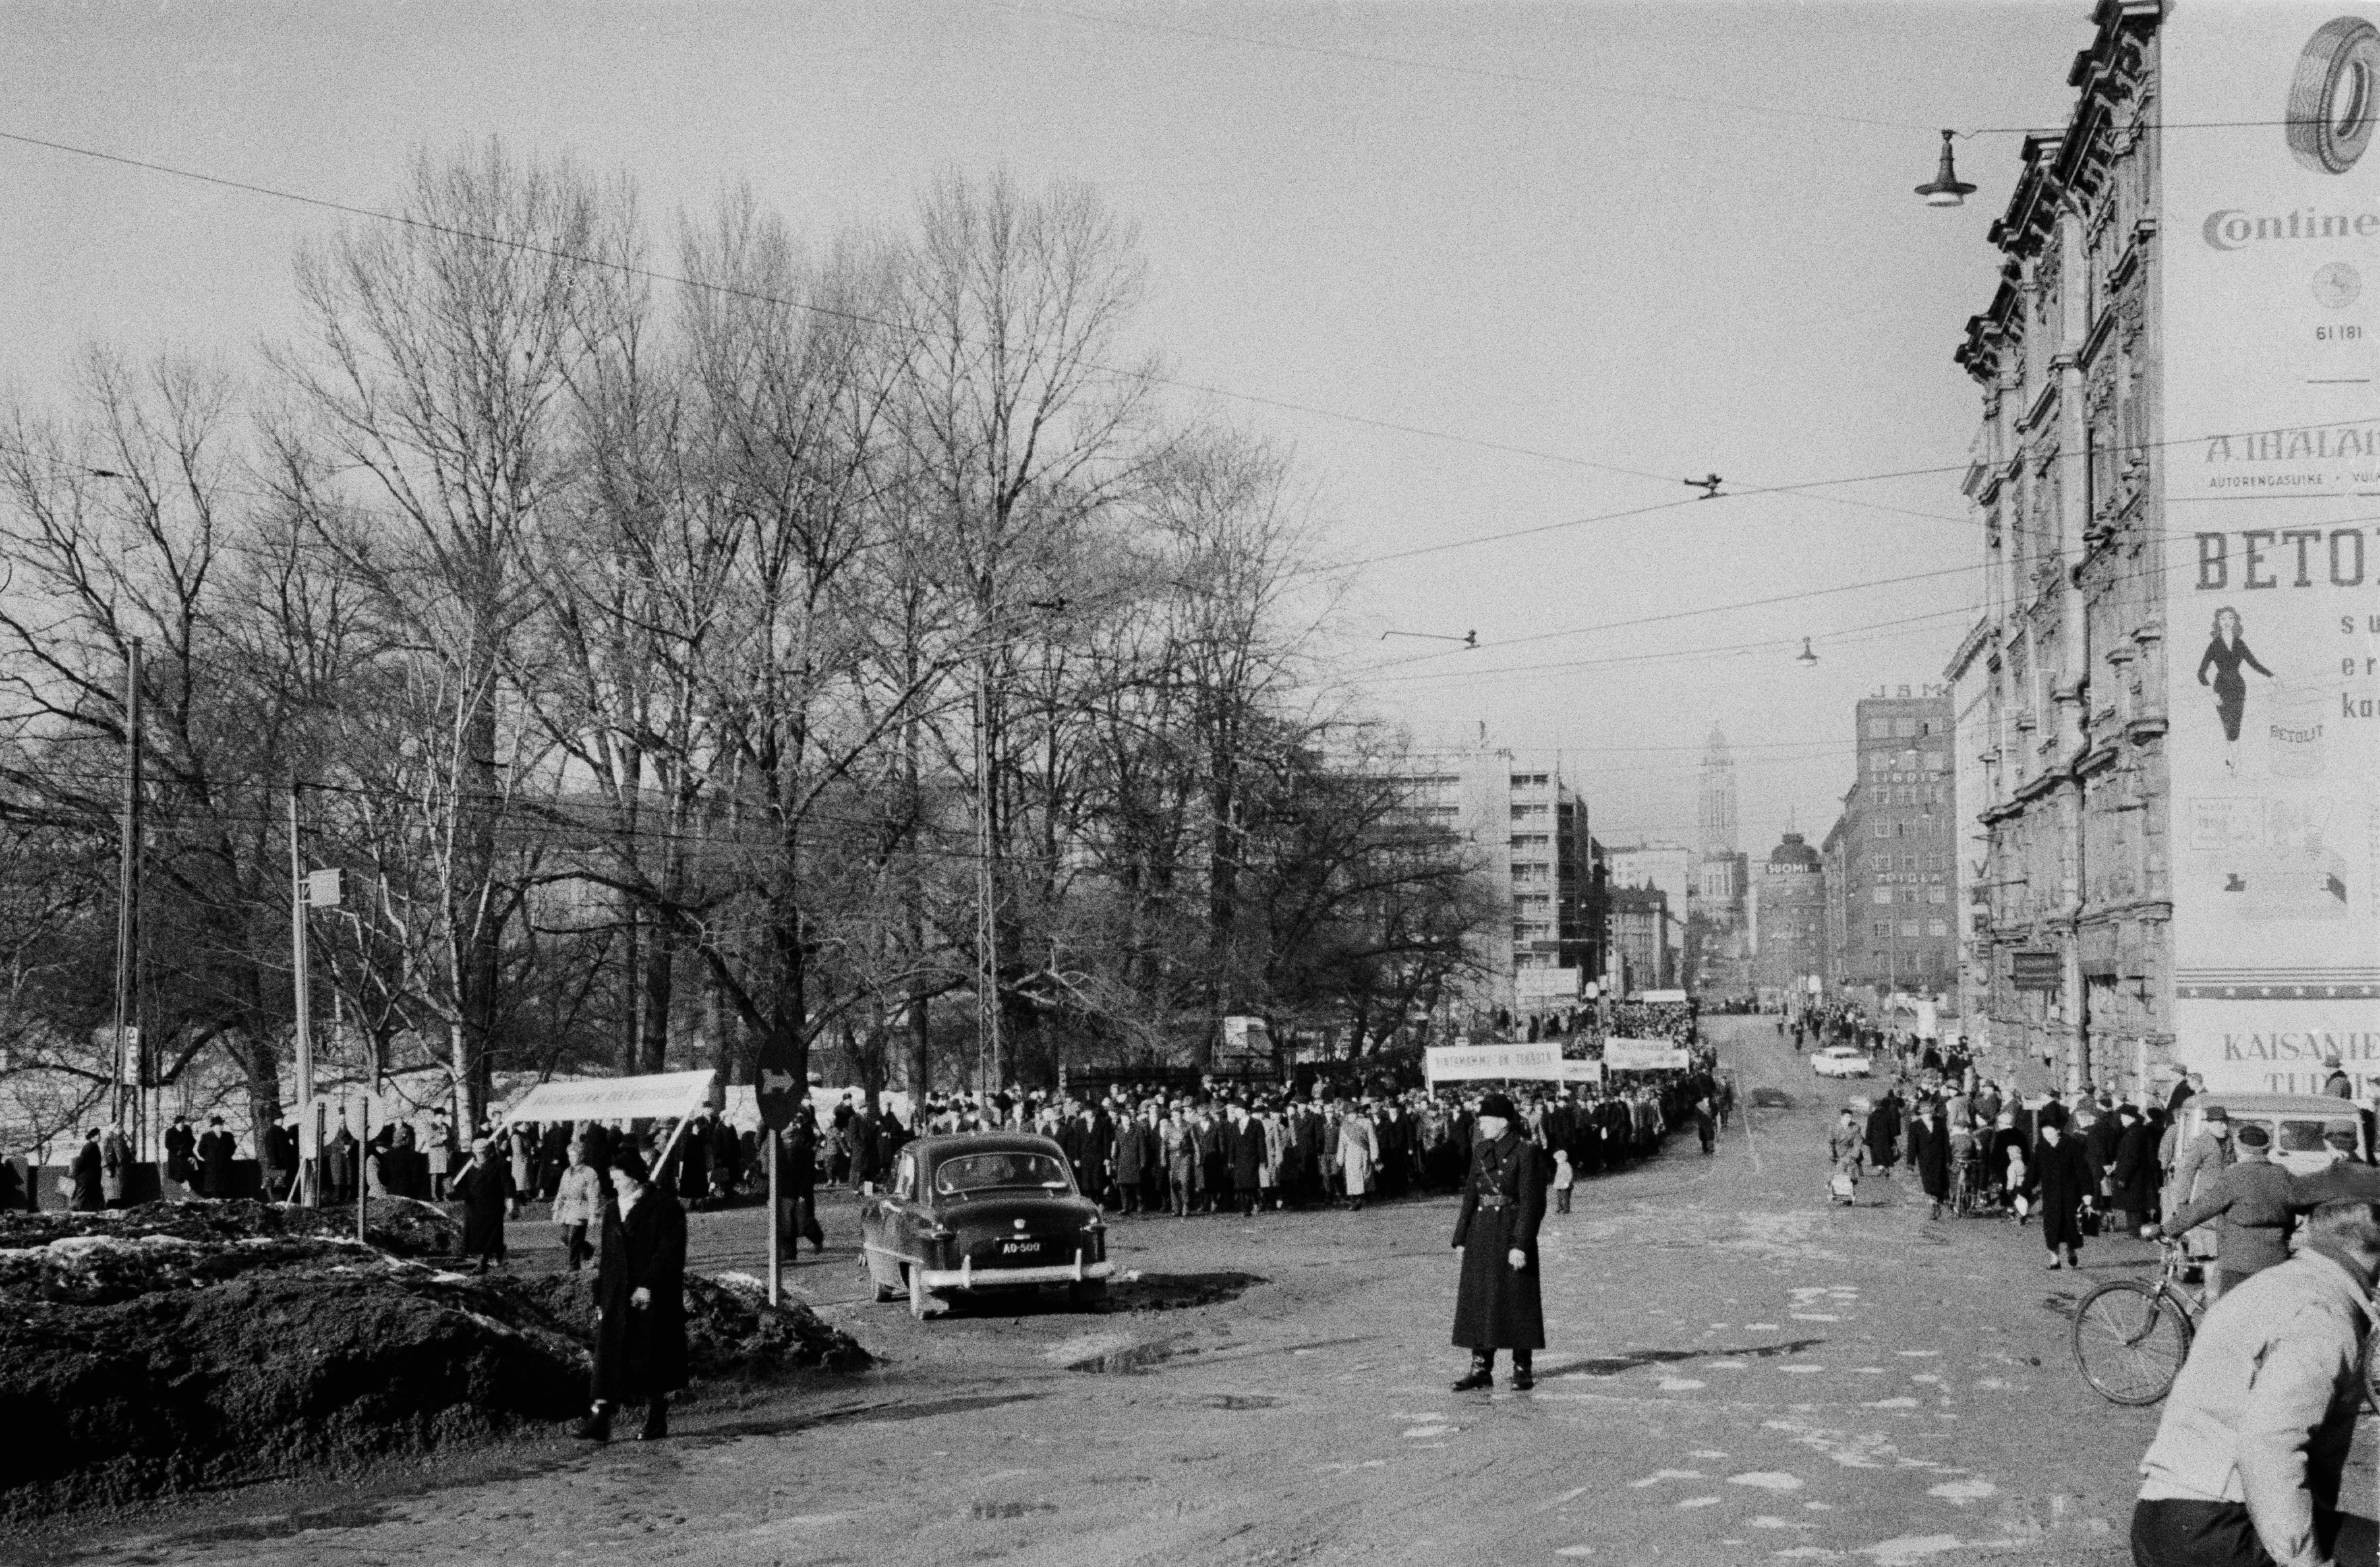 Mielenosoituskulkue yleislakon aikana Unioninkatu 44:n ja 39-45:n kohdalla.